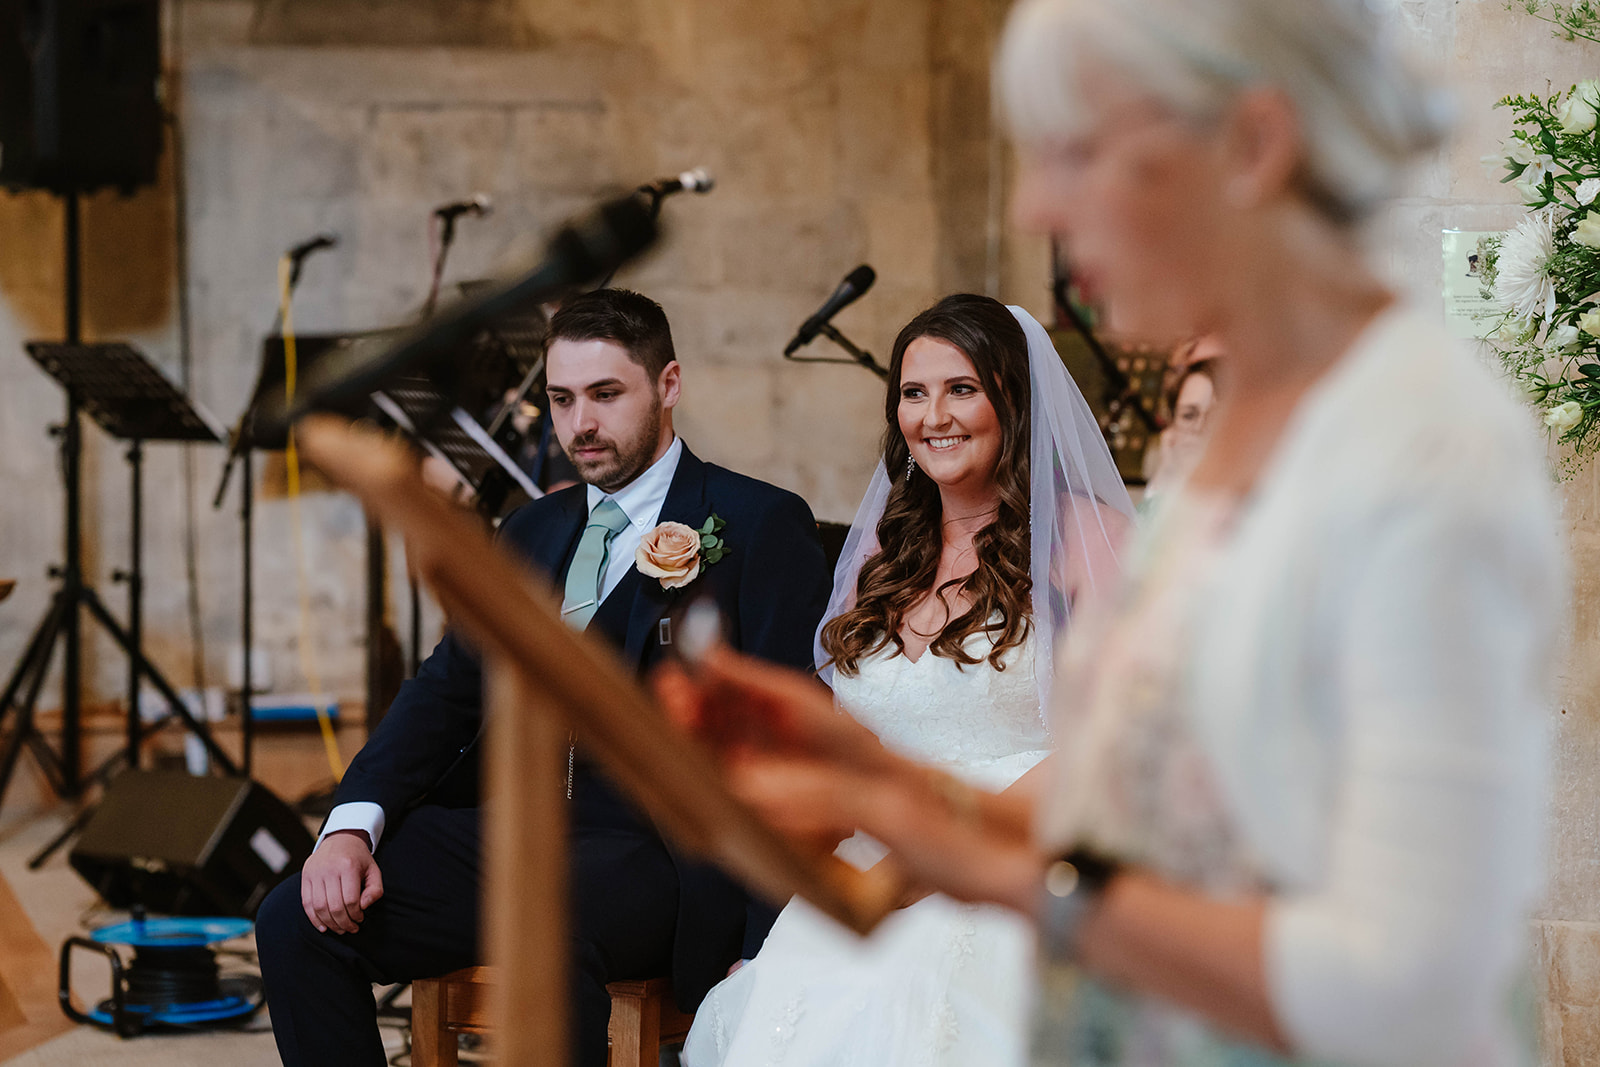 Dumbleton Hall Zara Davis Wedding Photography Worcestershire Gloucestershire Cotswolds reading during wedding